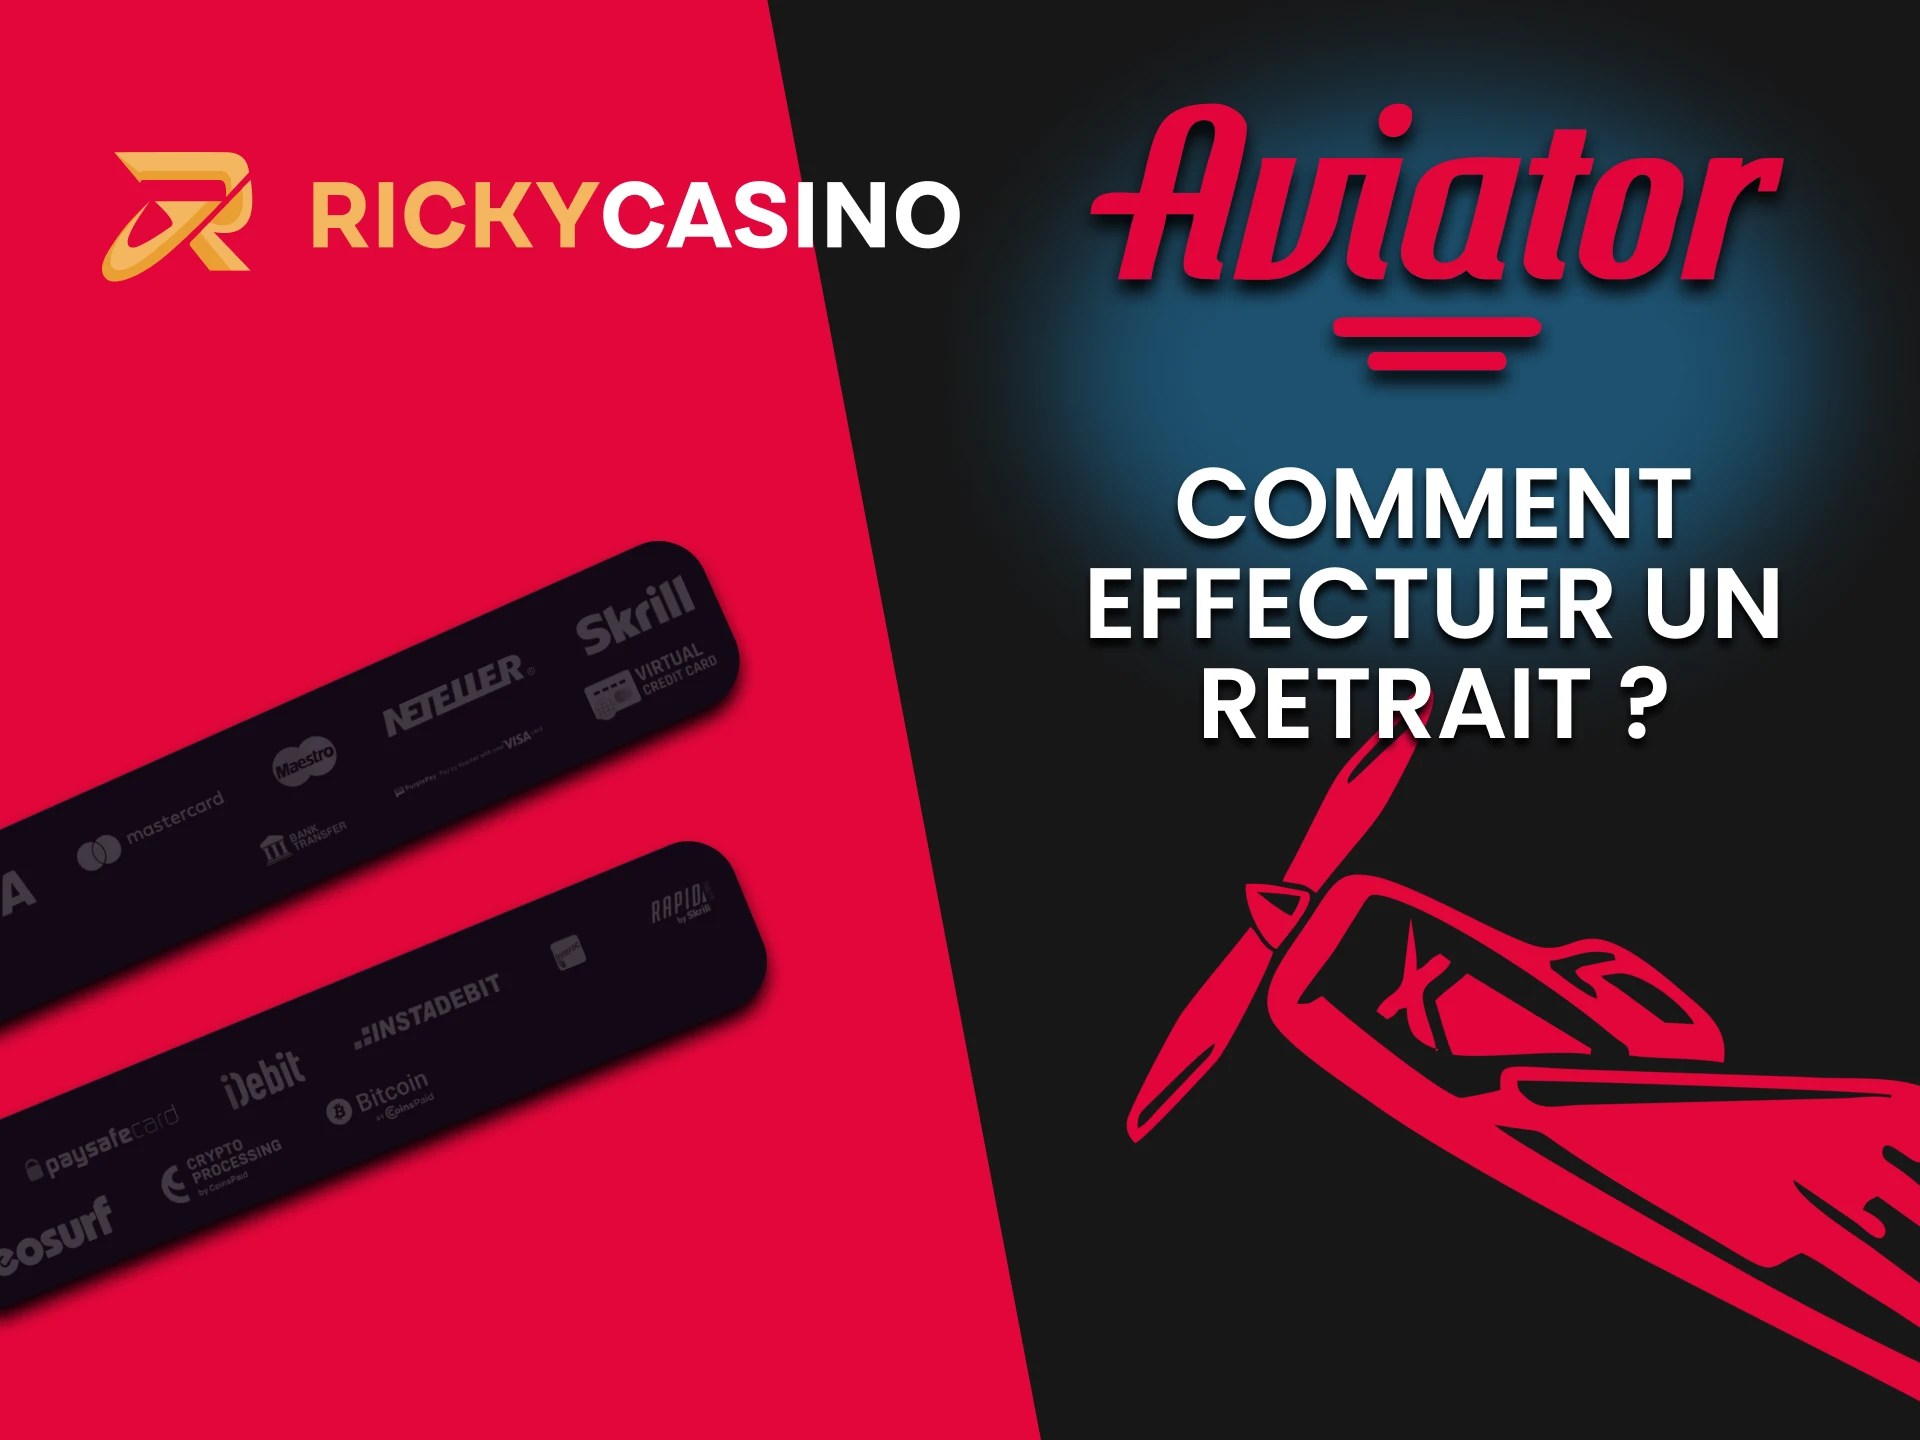 Choisissez votre méthode de retrait pour Aviator sur Ricky Casino.